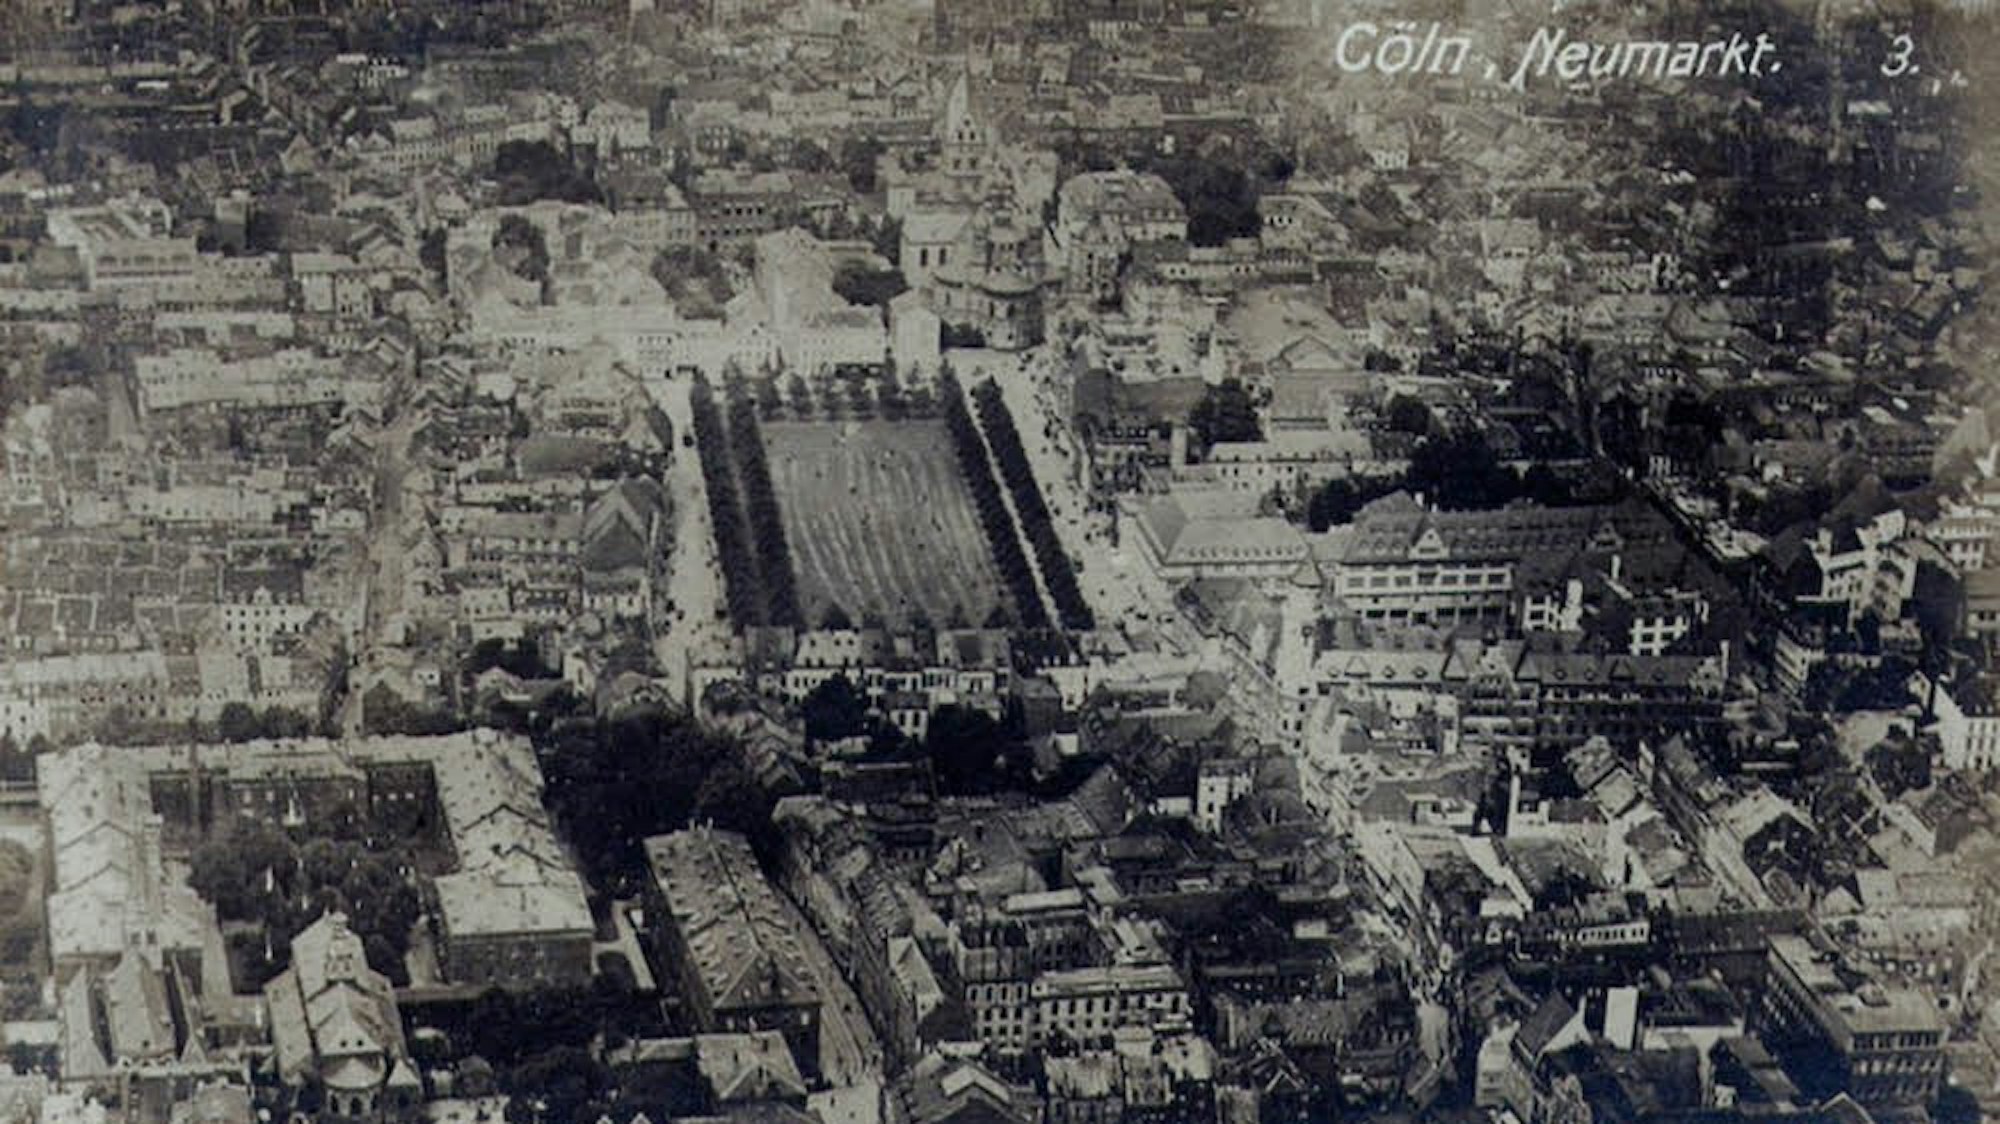 Eine Luftaufnahme aus dem Jahr 1900. Links ist das Bürgerhospital mit St.Cäcilien zu sehen, im Zentrum der Neumarkt und schräg darüber, am oberen Bildrand, die Kirche St. Aposteln.